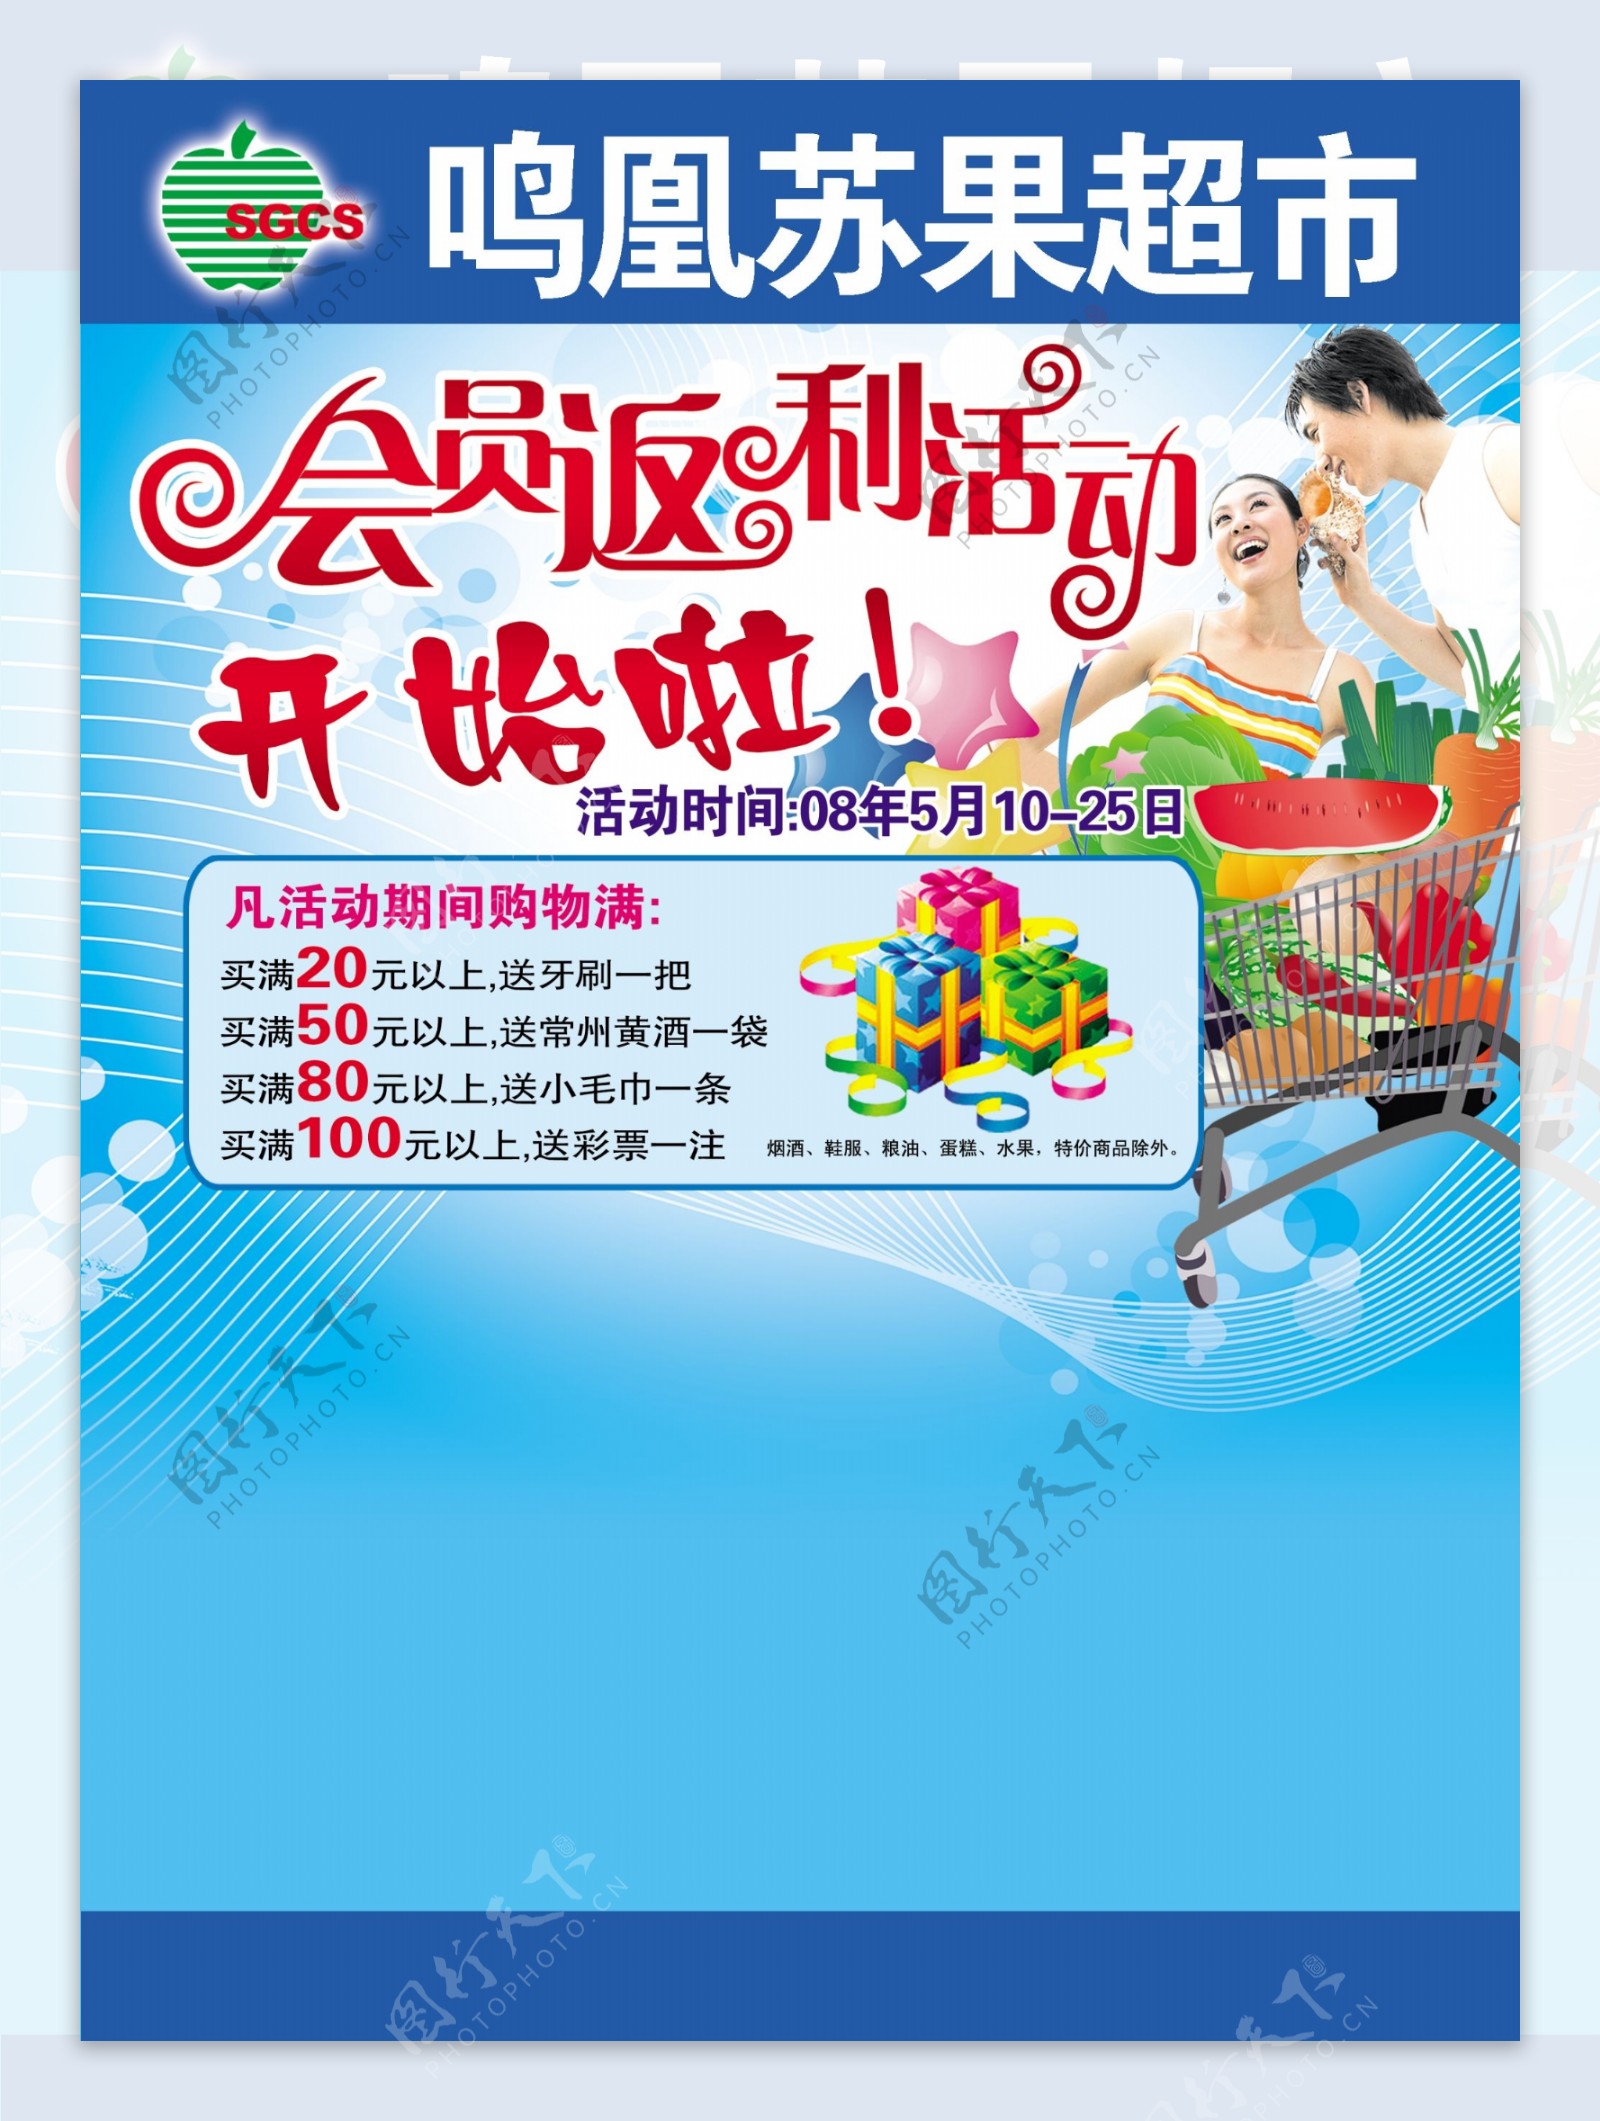 苏果超市会员返利活动超市素材专辑DVD1